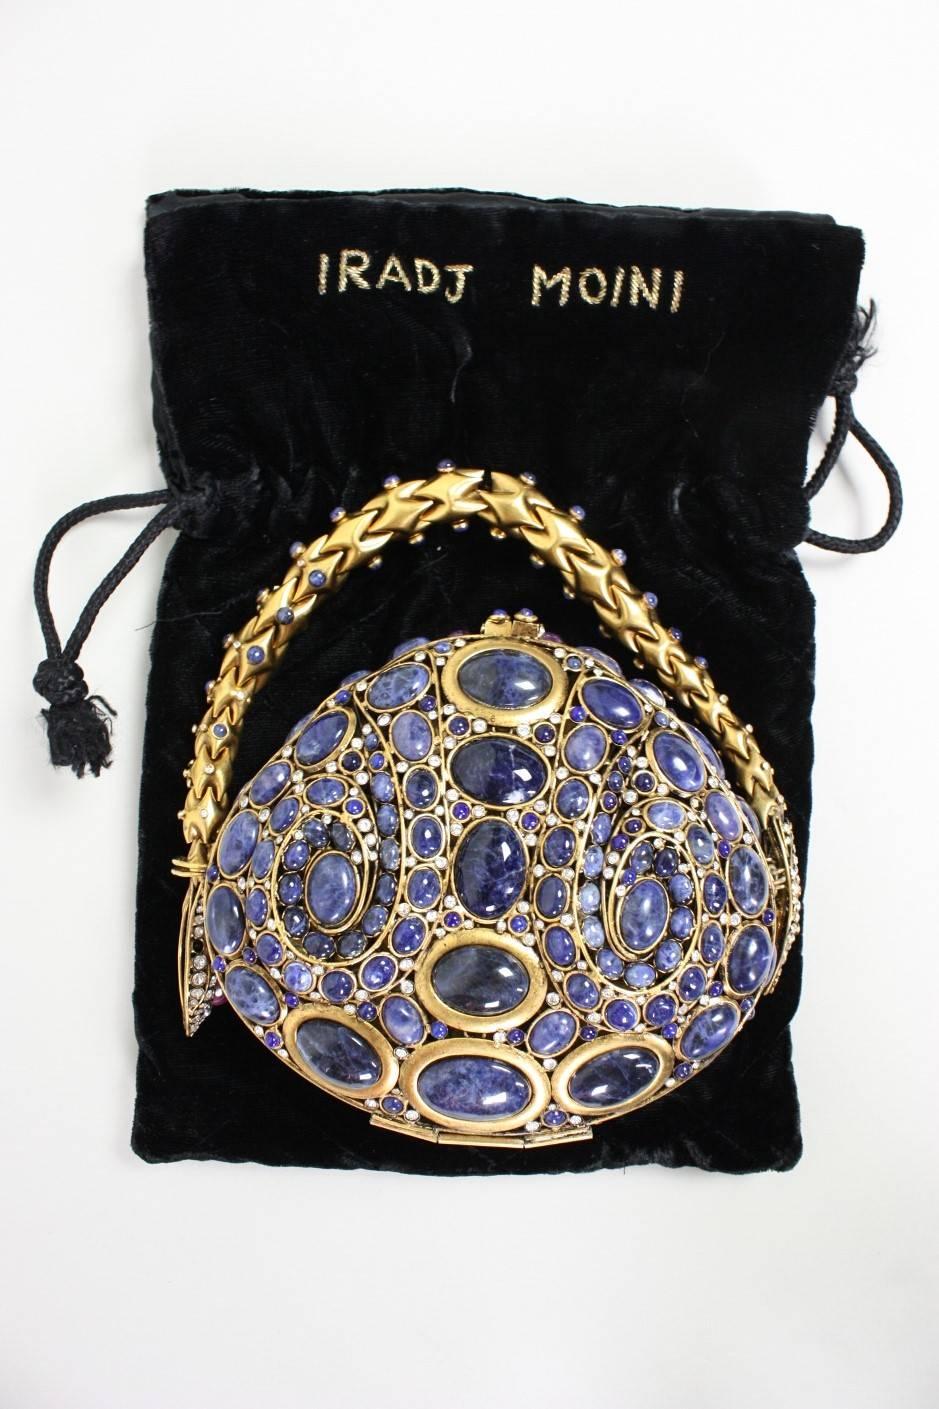 Iradj Moini Lapis Lazuli Cabochon & Rhinestone Handbag 5